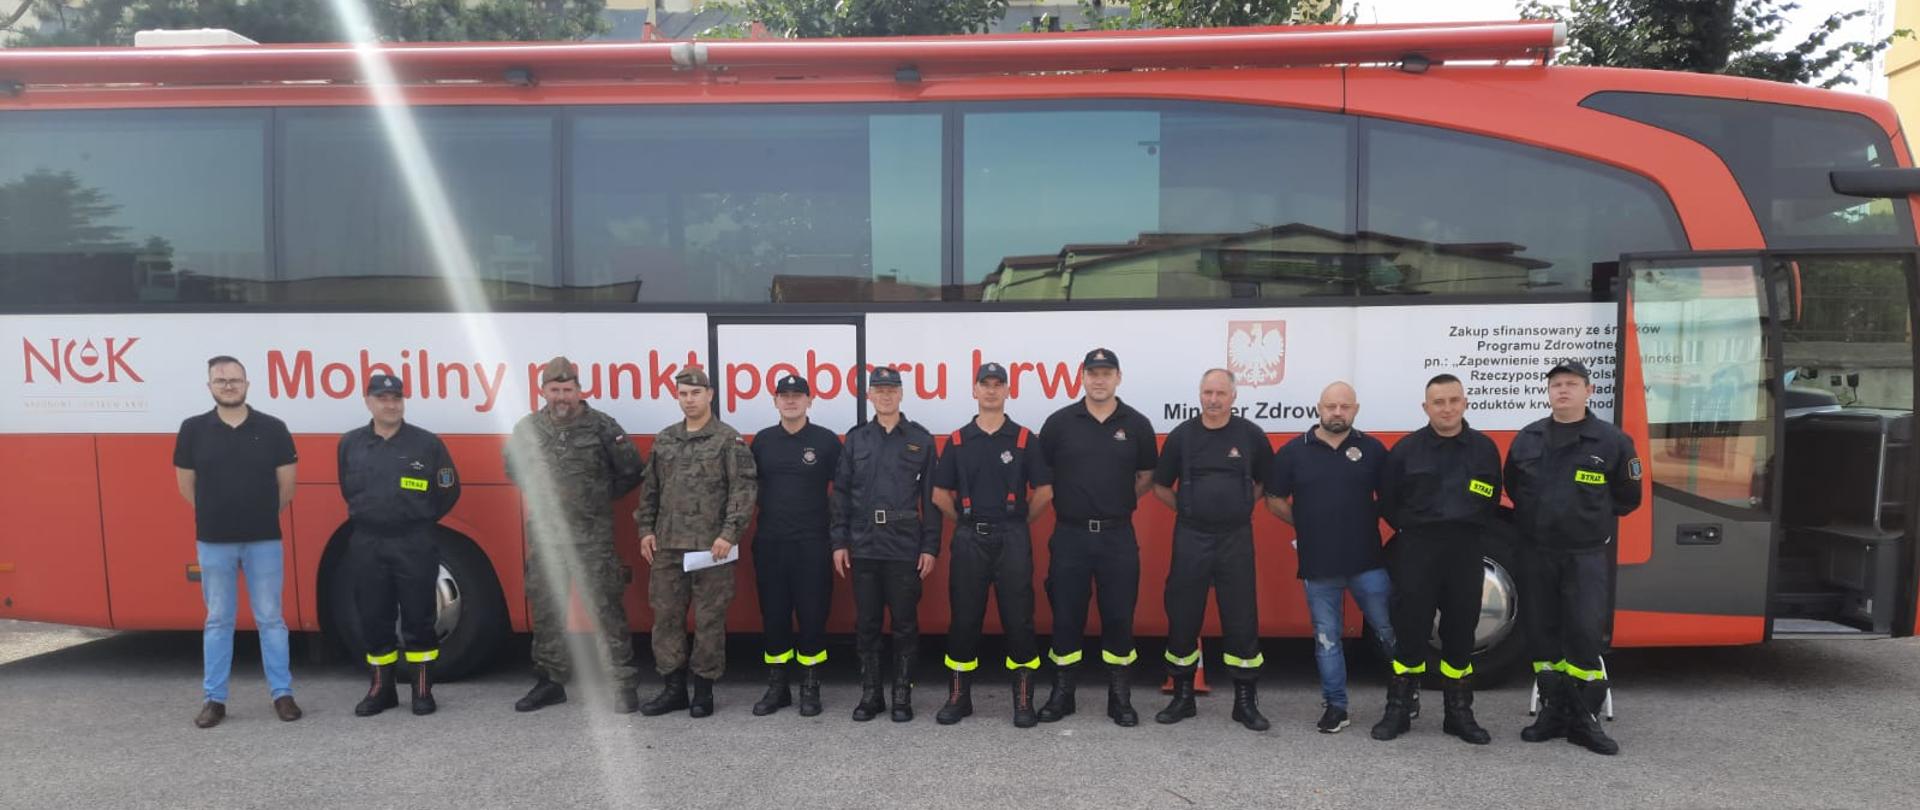 Strażacy PSP i OSP oraz żołnierze WOT na tle krwiobusa. Wszyscy ubrani w mundury.